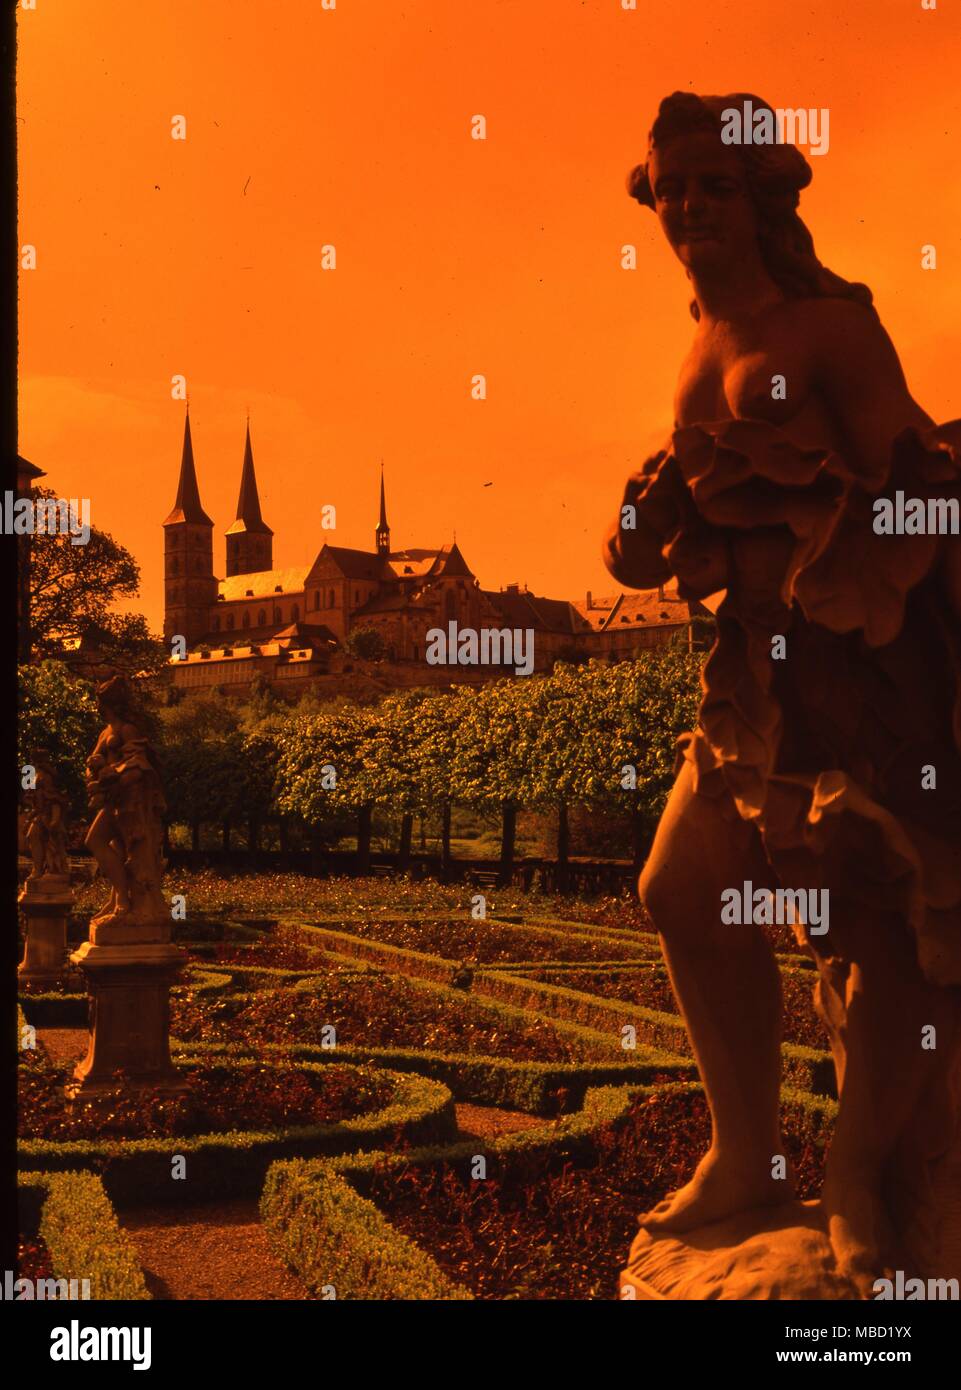 Bamberger, Deutschland. Das Schloss Marienburg, die dominiert die Stadt der Bamberger. Eines der wichtigsten Zentren der mittelalterlichen Hexenjagden. Stockfoto